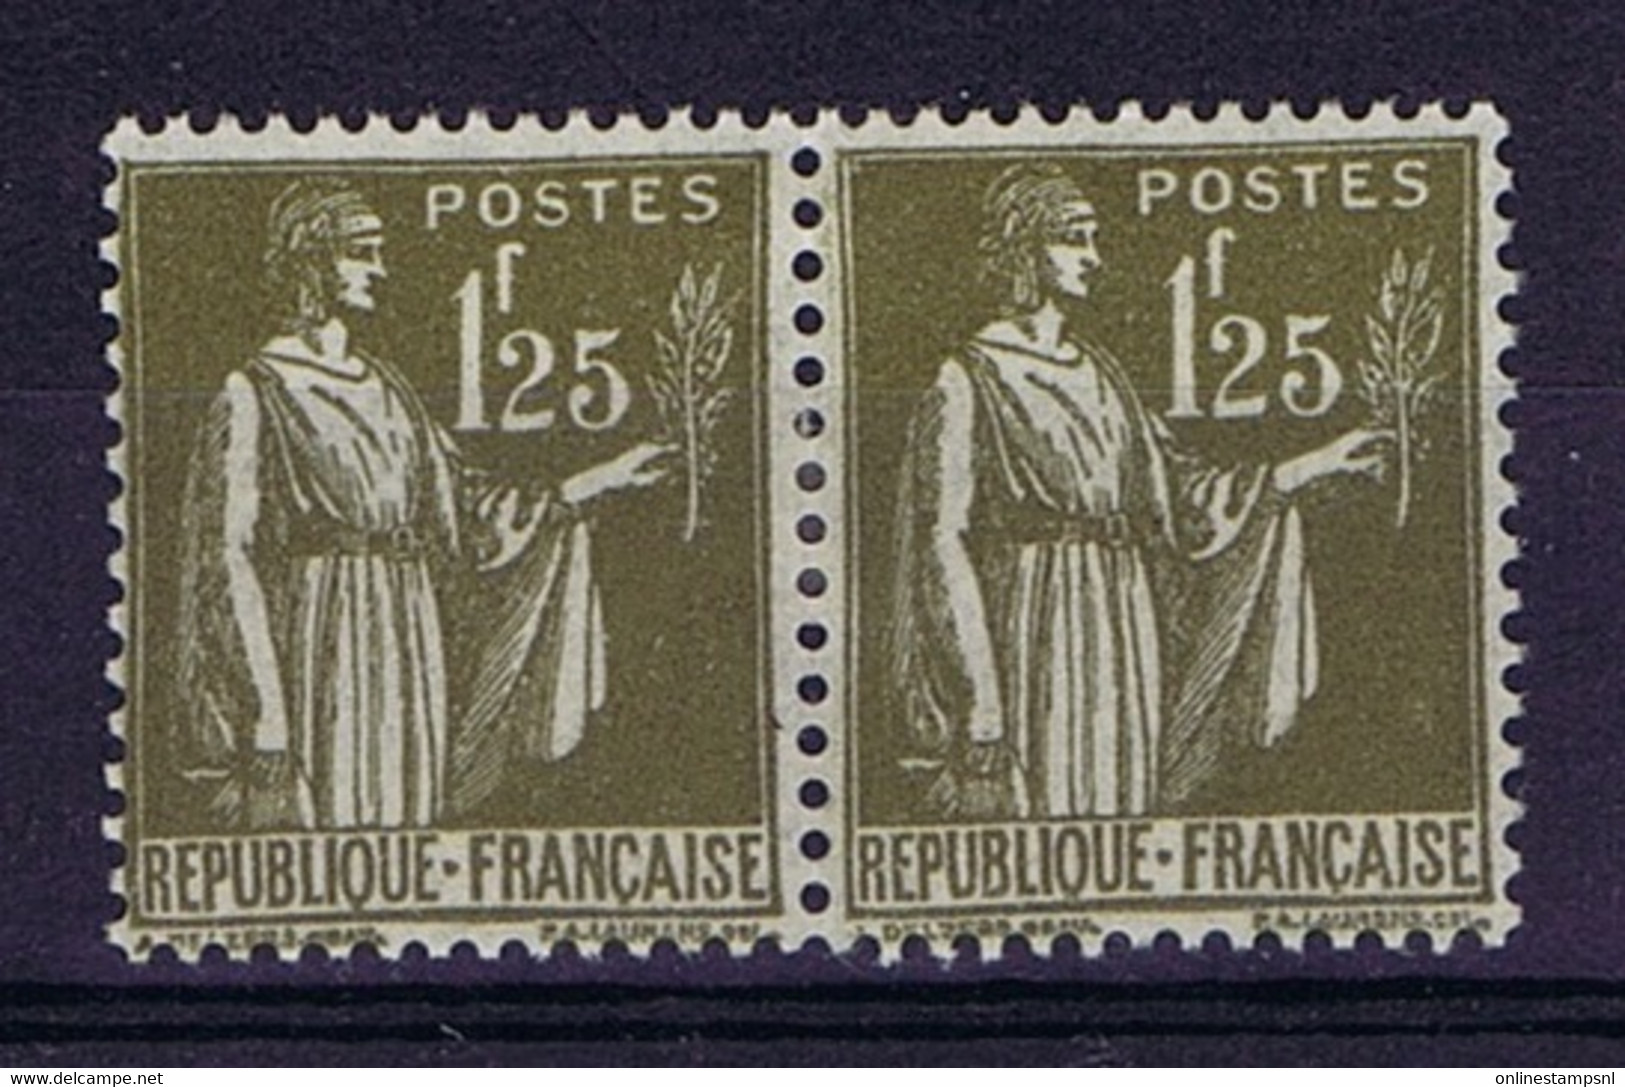 France Yv 287 Paire MH/*, Mit Falz, Avec Charnière - 1932-39 Vrede